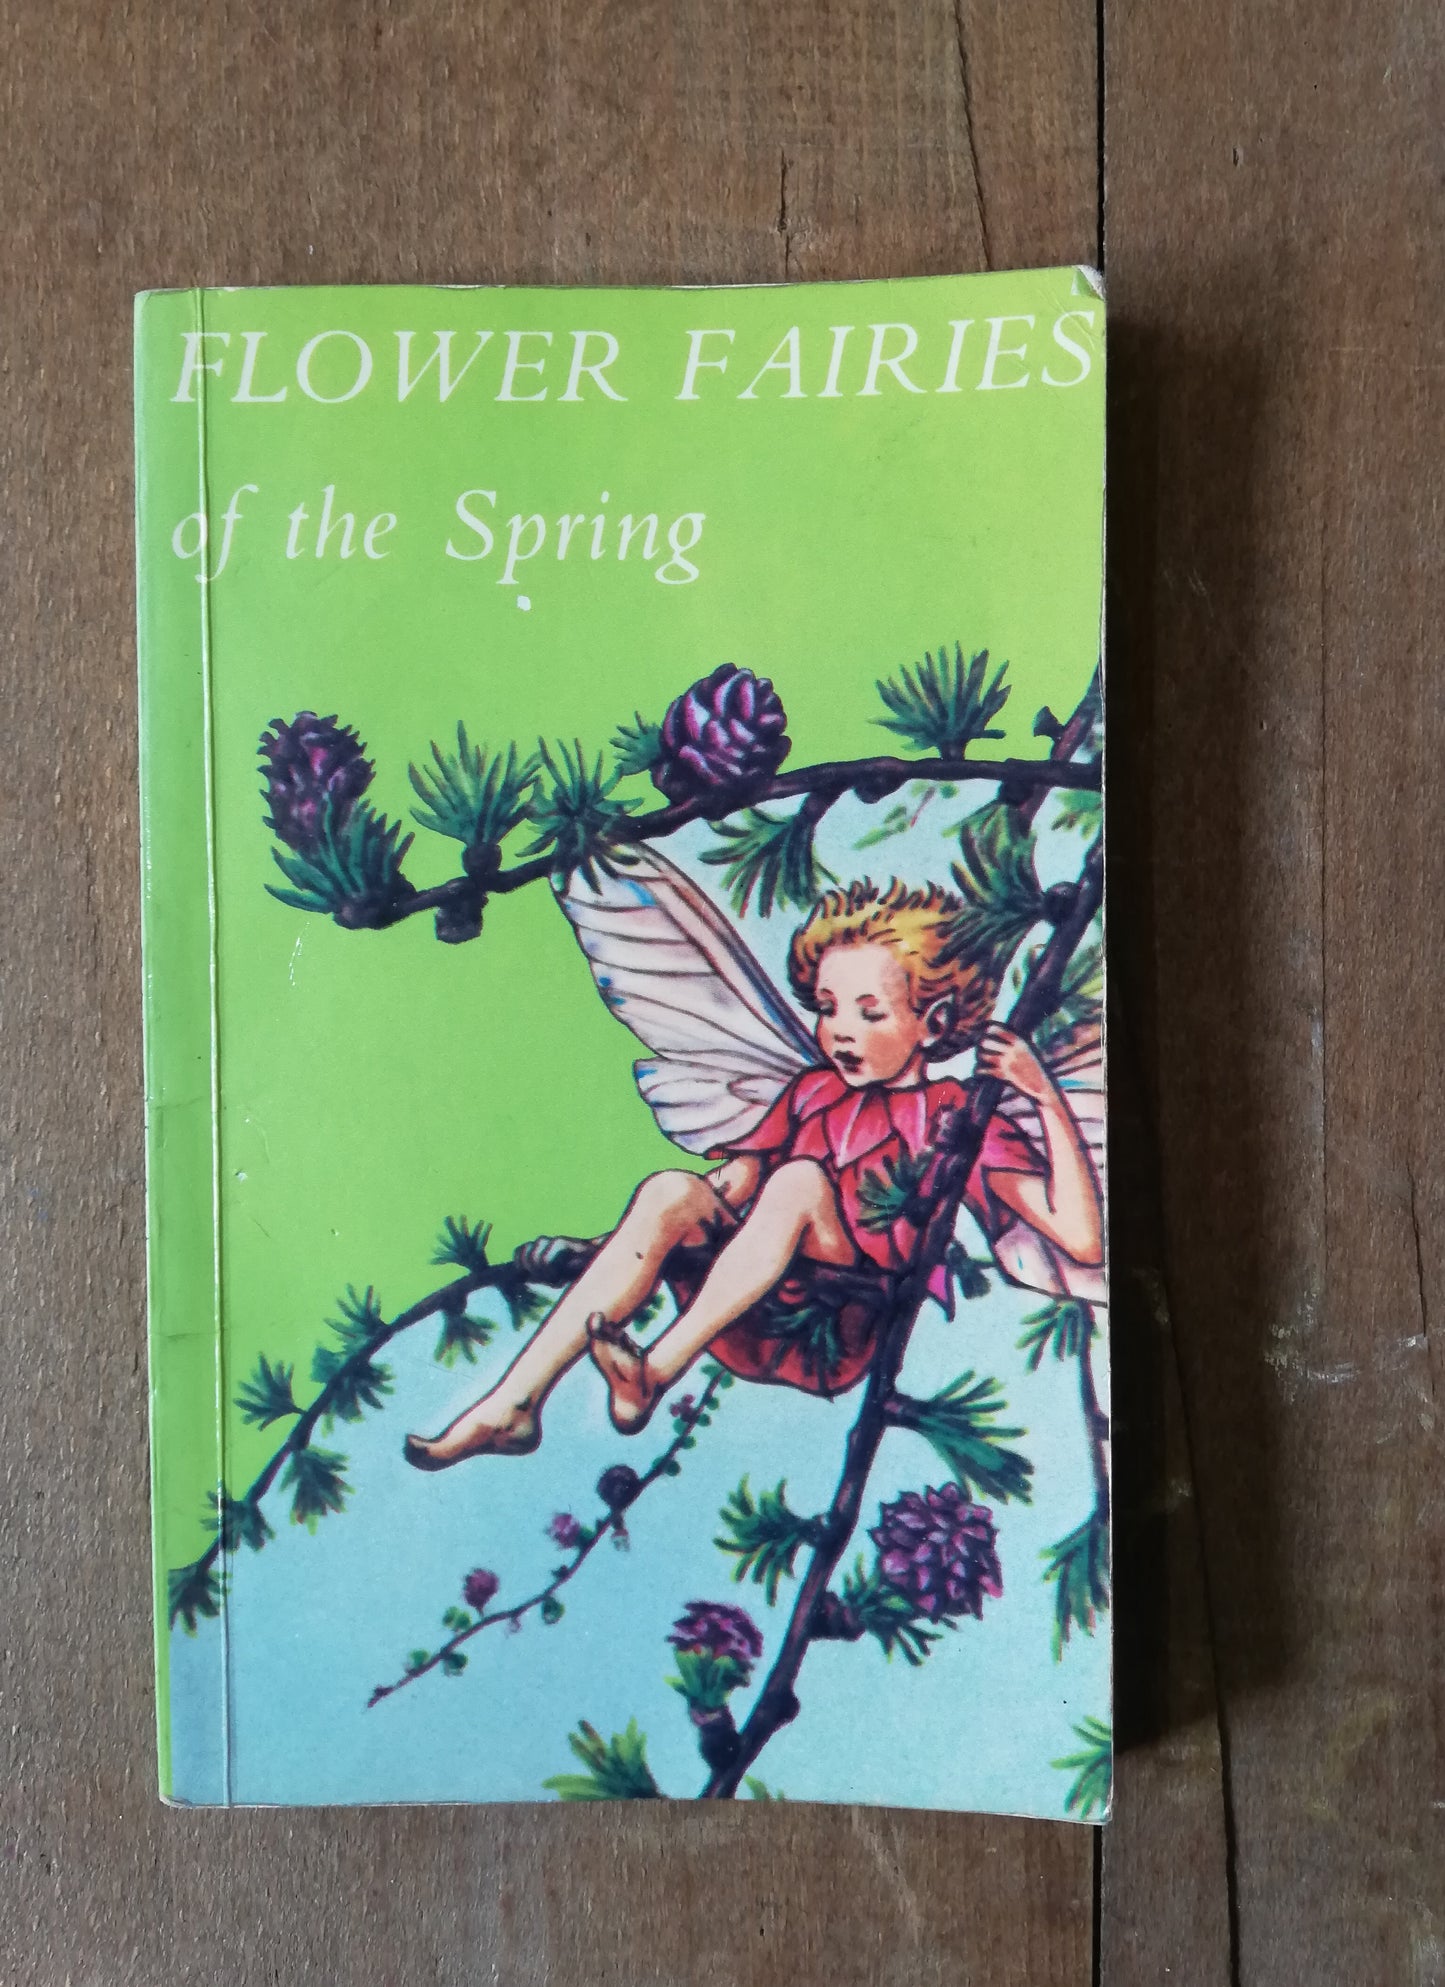 Gorgeous colourful little flower fairies book